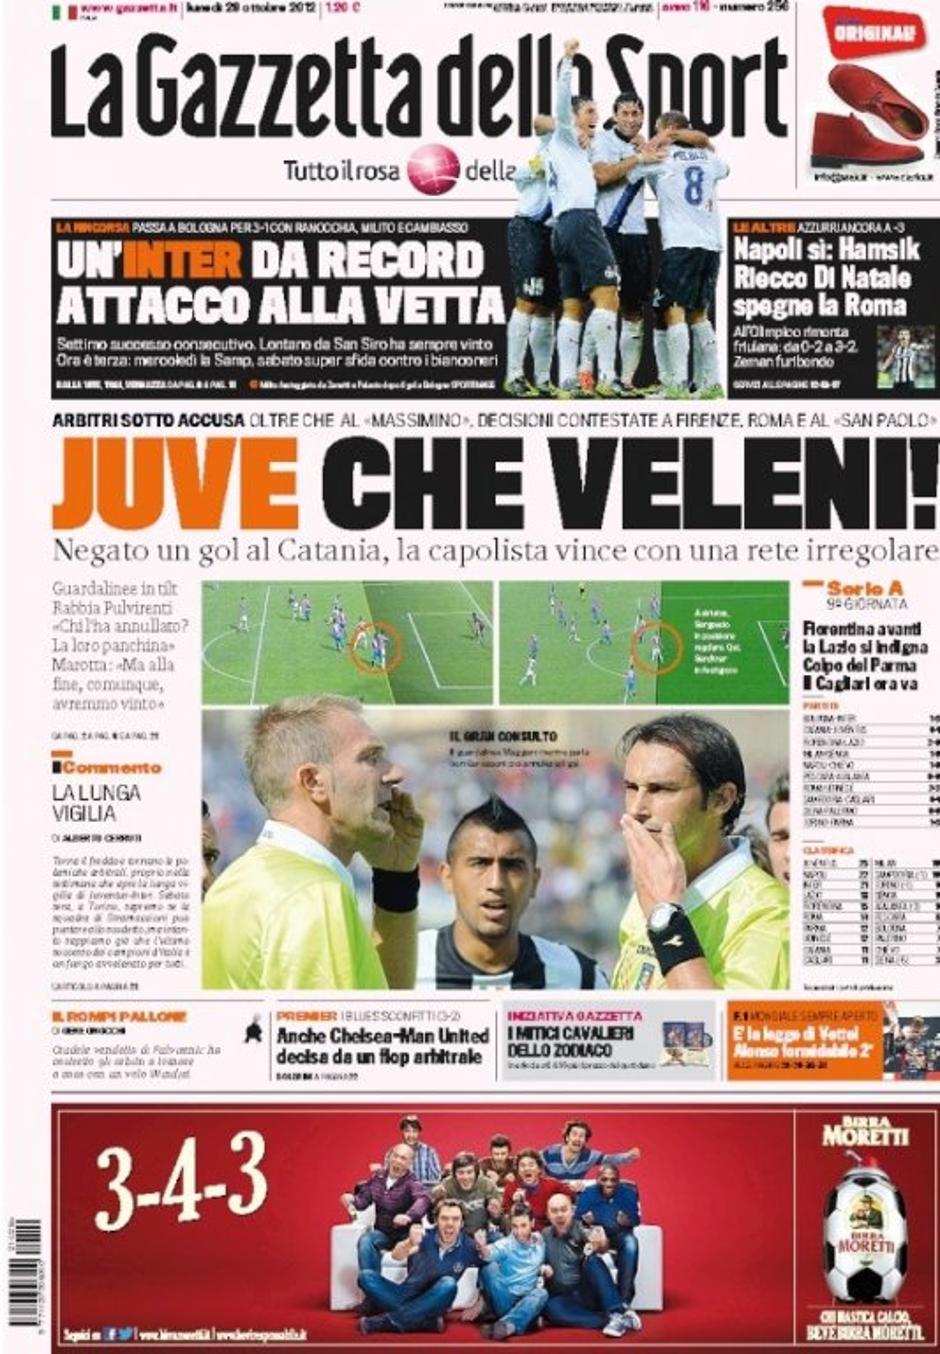 Gazzetta dello Sport časopis Juventus prva stran | Avtor: Reševalni pas/Twitter